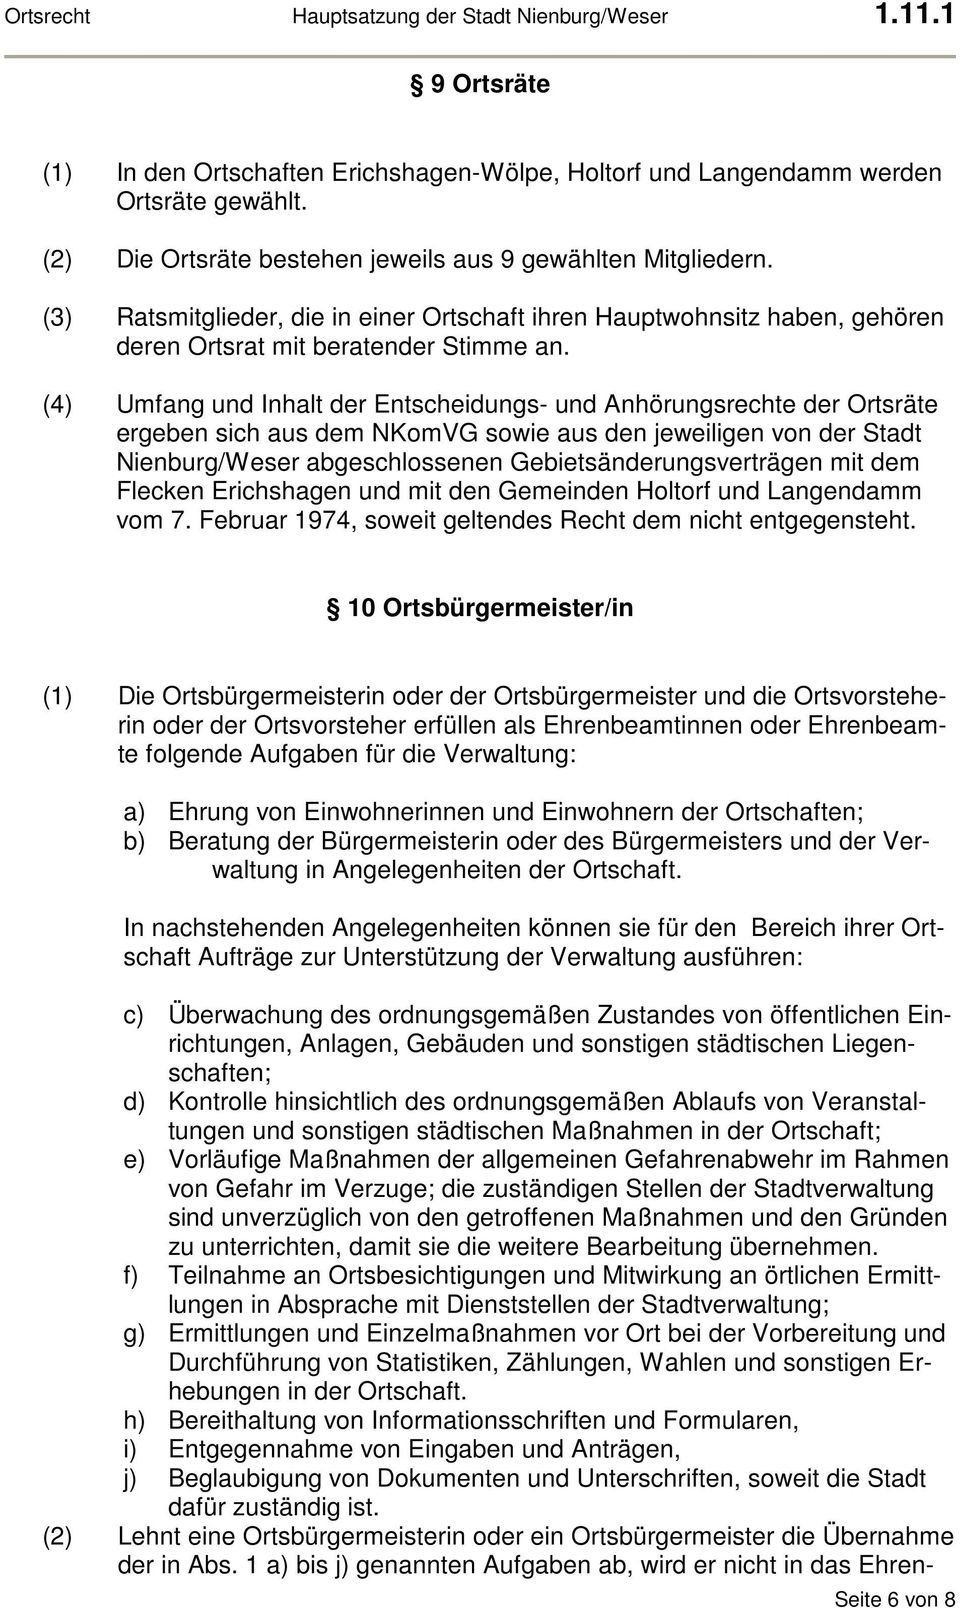 (4) Umfang und Inhalt der Entscheidungs- und Anhörungsrechte der Ortsräte ergeben sich aus dem NKomVG sowie aus den jeweiligen von der Stadt Nienburg/Weser abgeschlossenen Gebietsänderungsverträgen